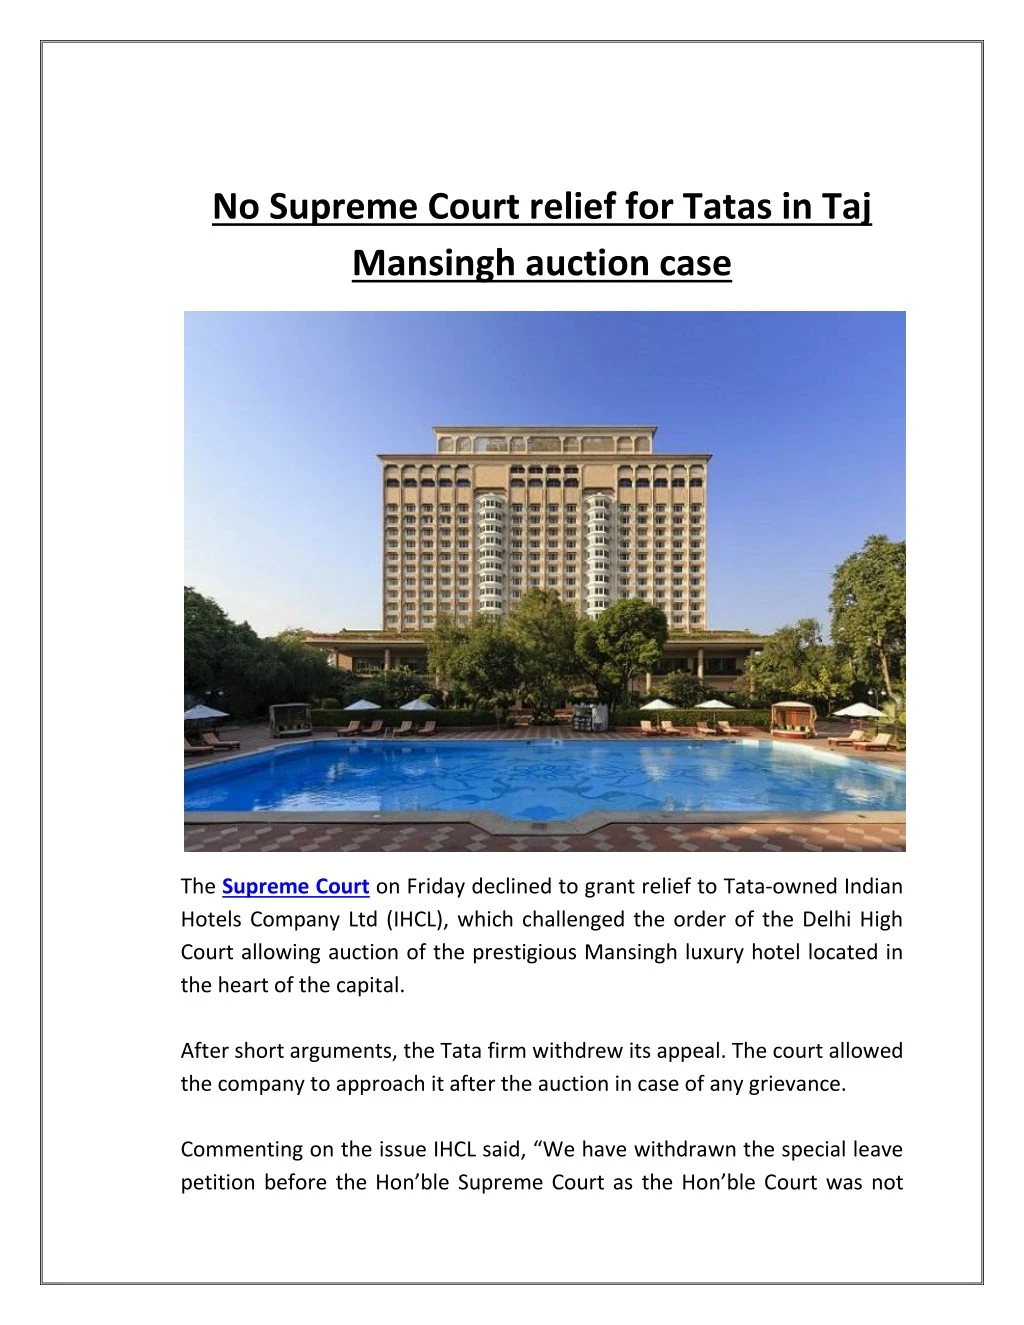 no supreme court relief for tatas in taj mansingh